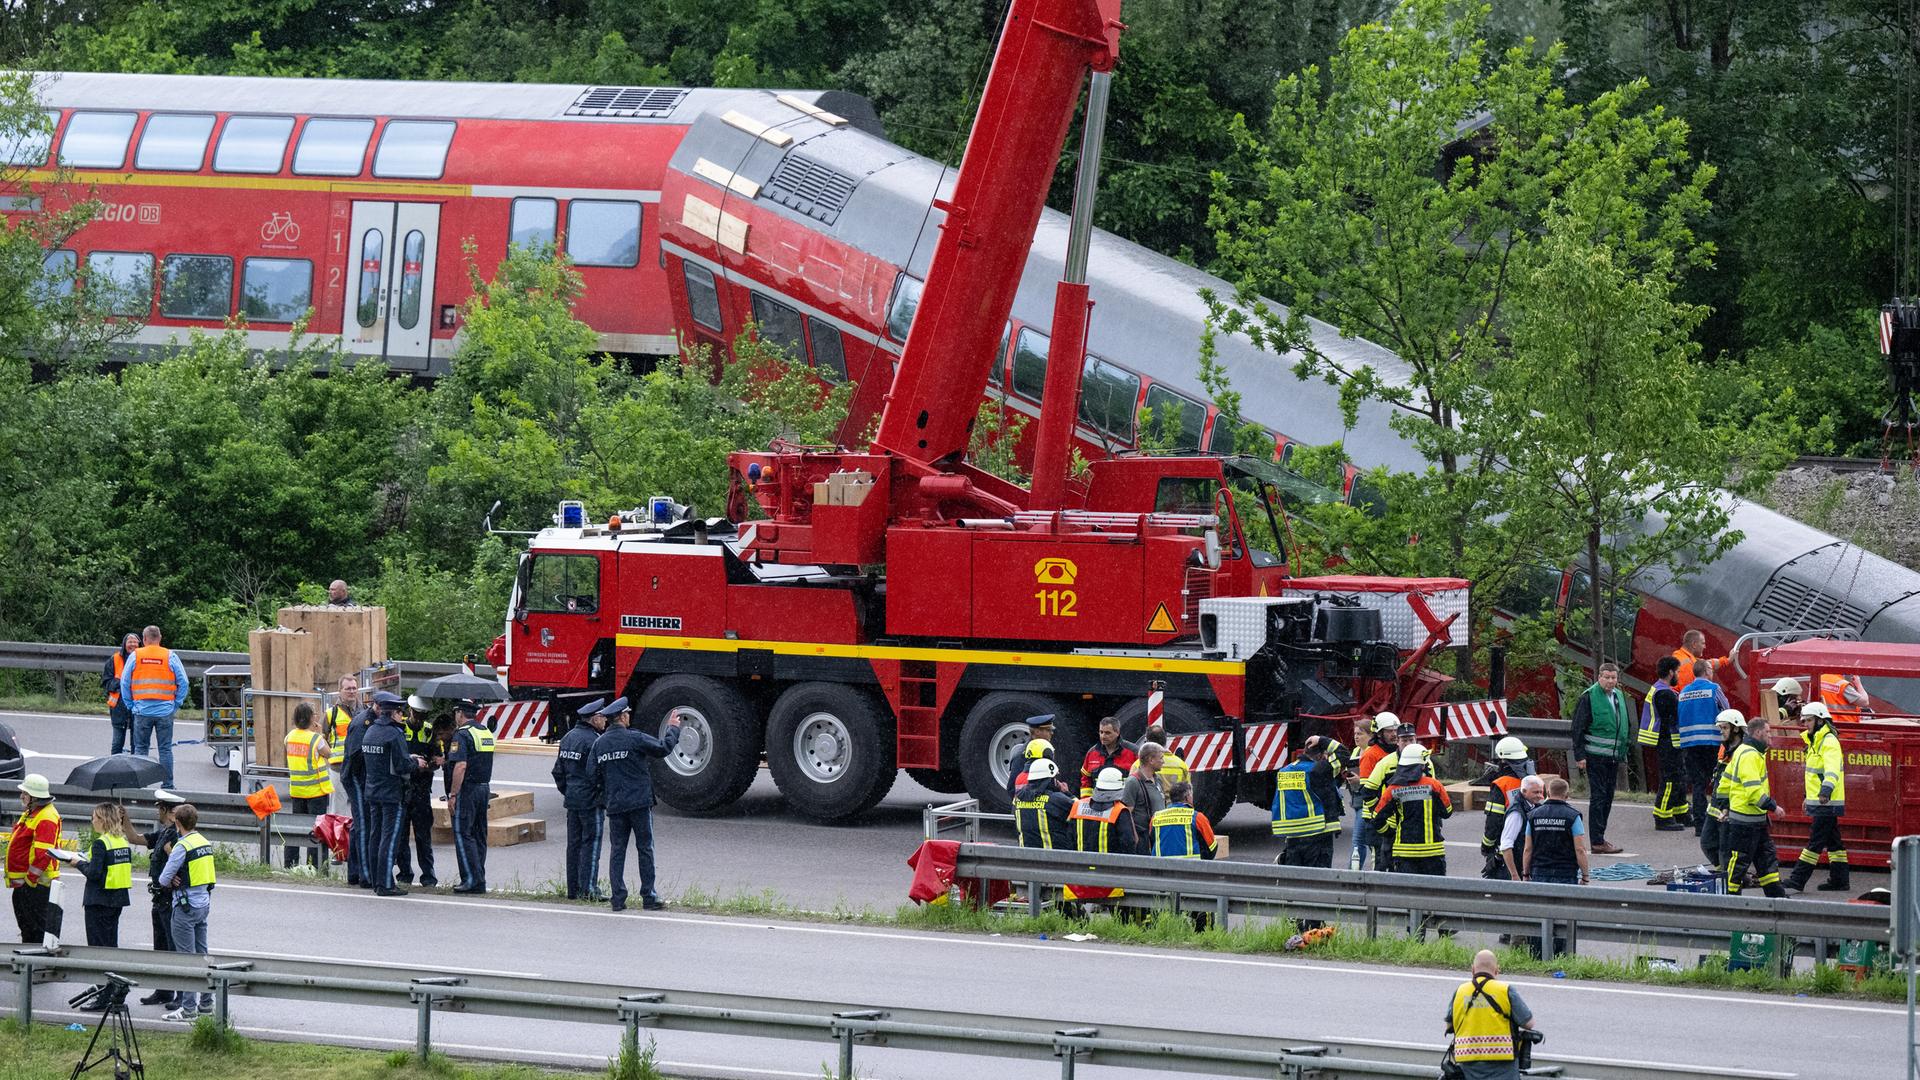 Nach dem schweren Zugunglück sind in Garmisch-Partenkirchen zahlreiche Einsatz- und Rettungskräfte im Einsatz. Im Hintergrund ist der entgleiste Regionalzug zu sehen.